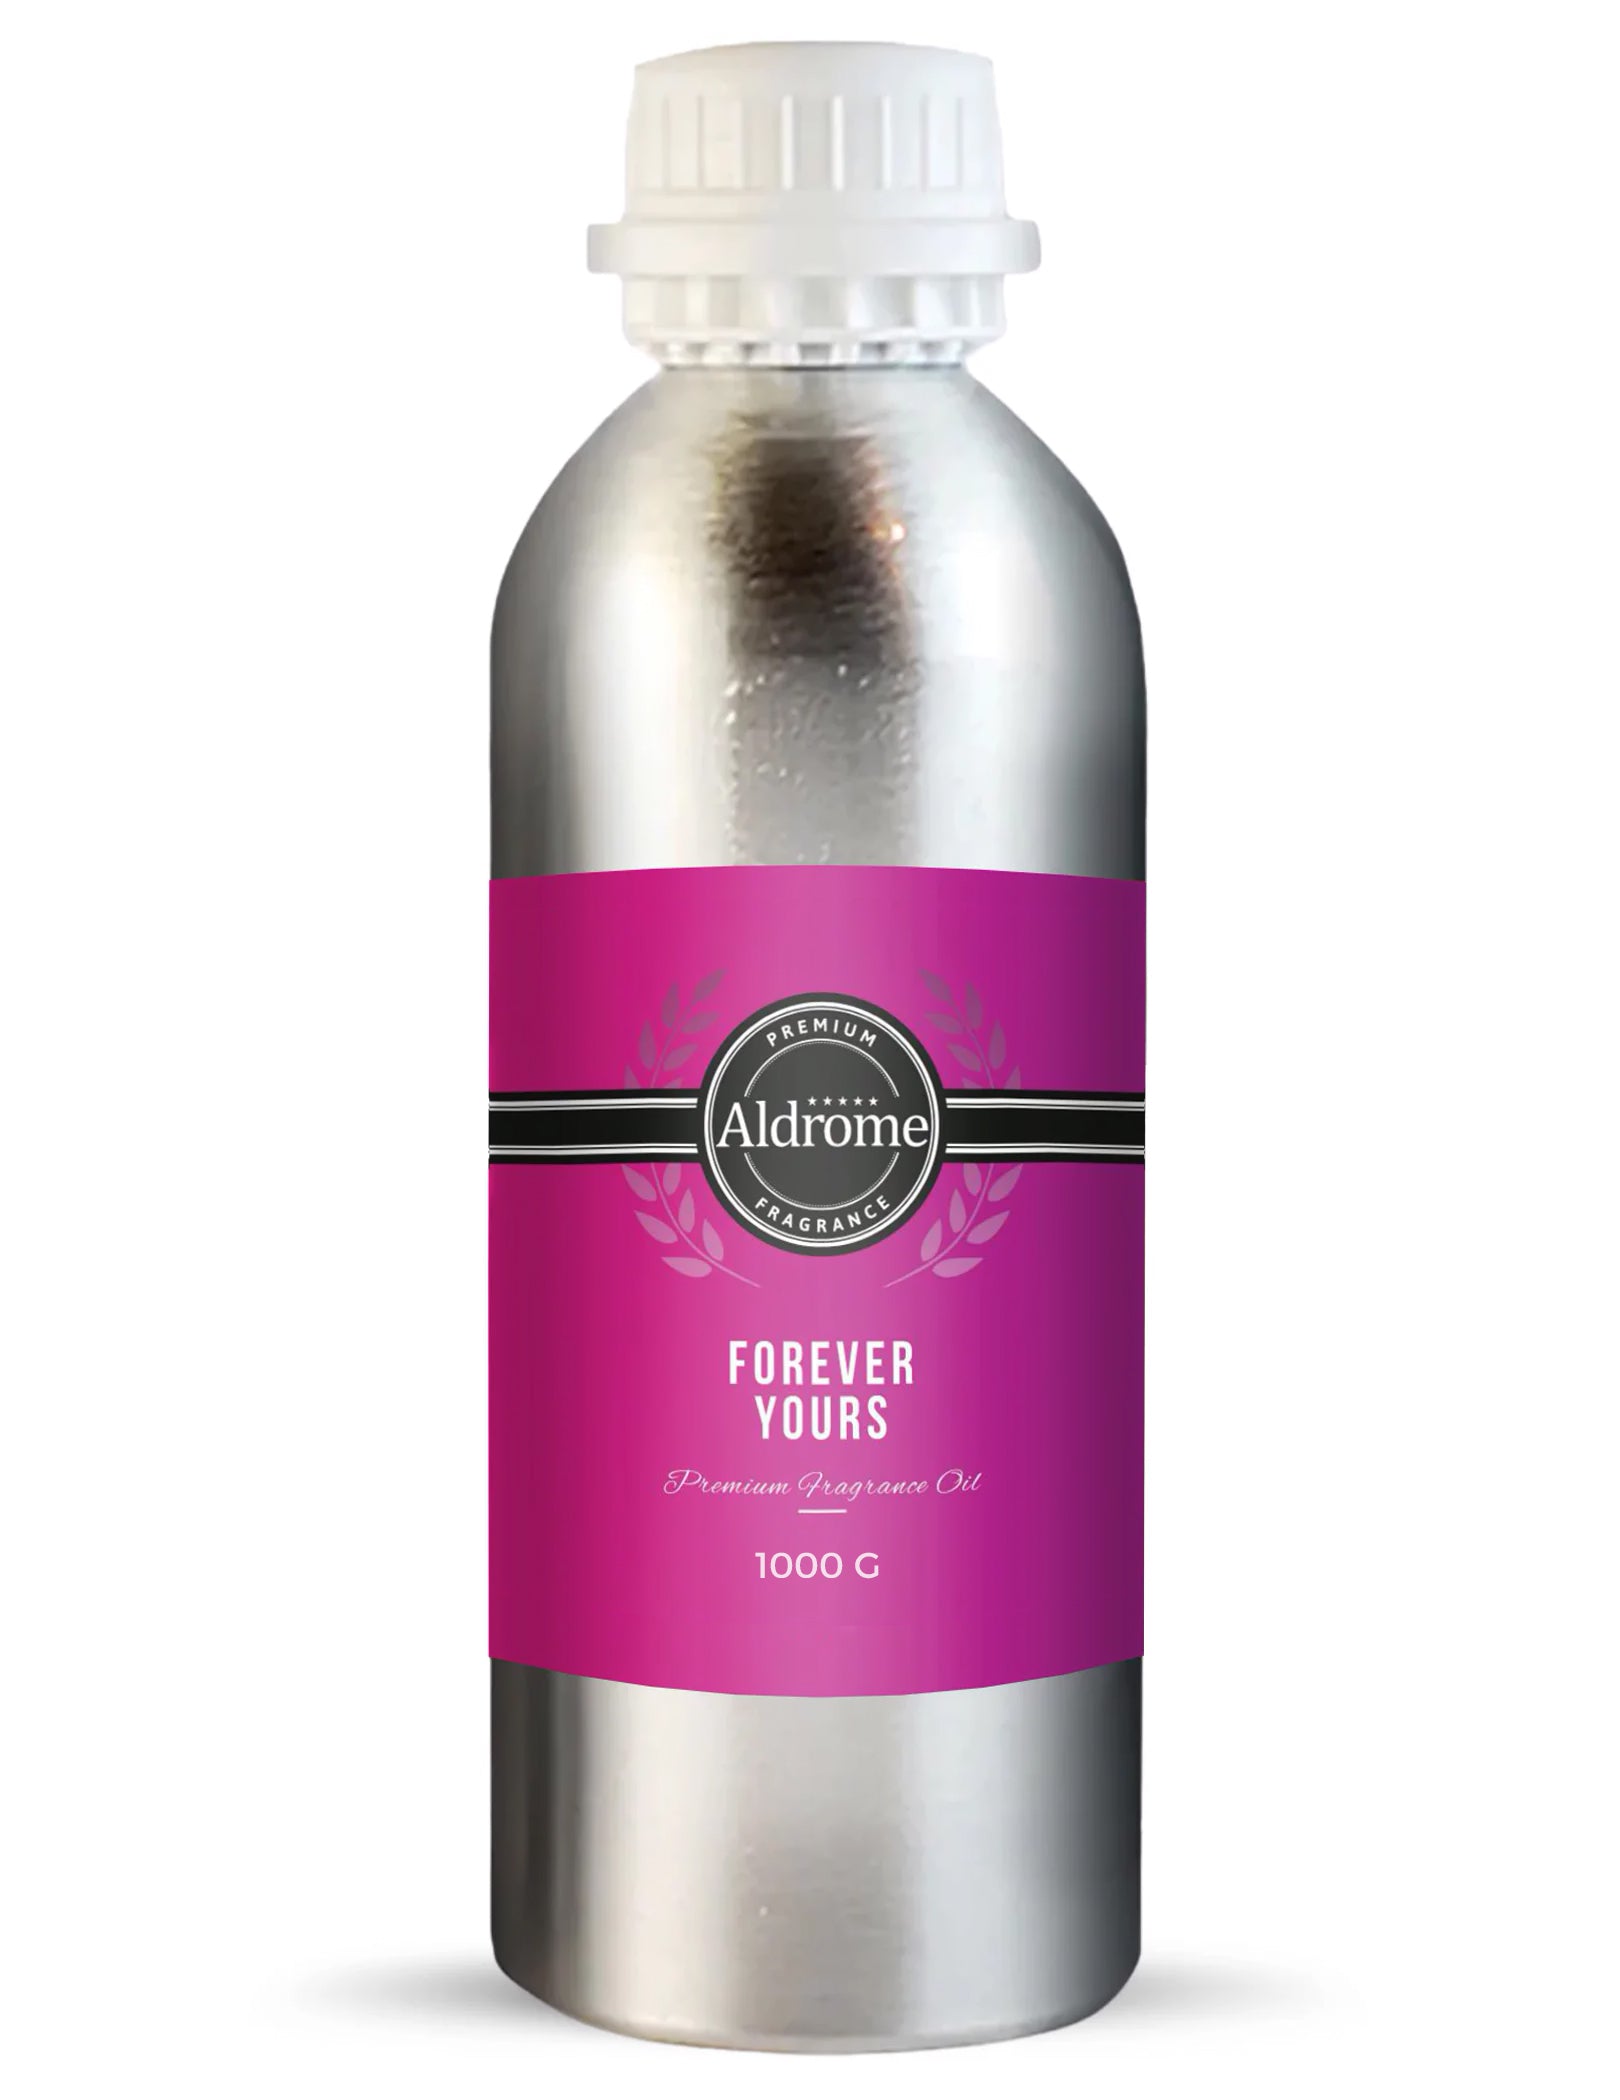 Forever yours Fragrance Oil - 1000 G